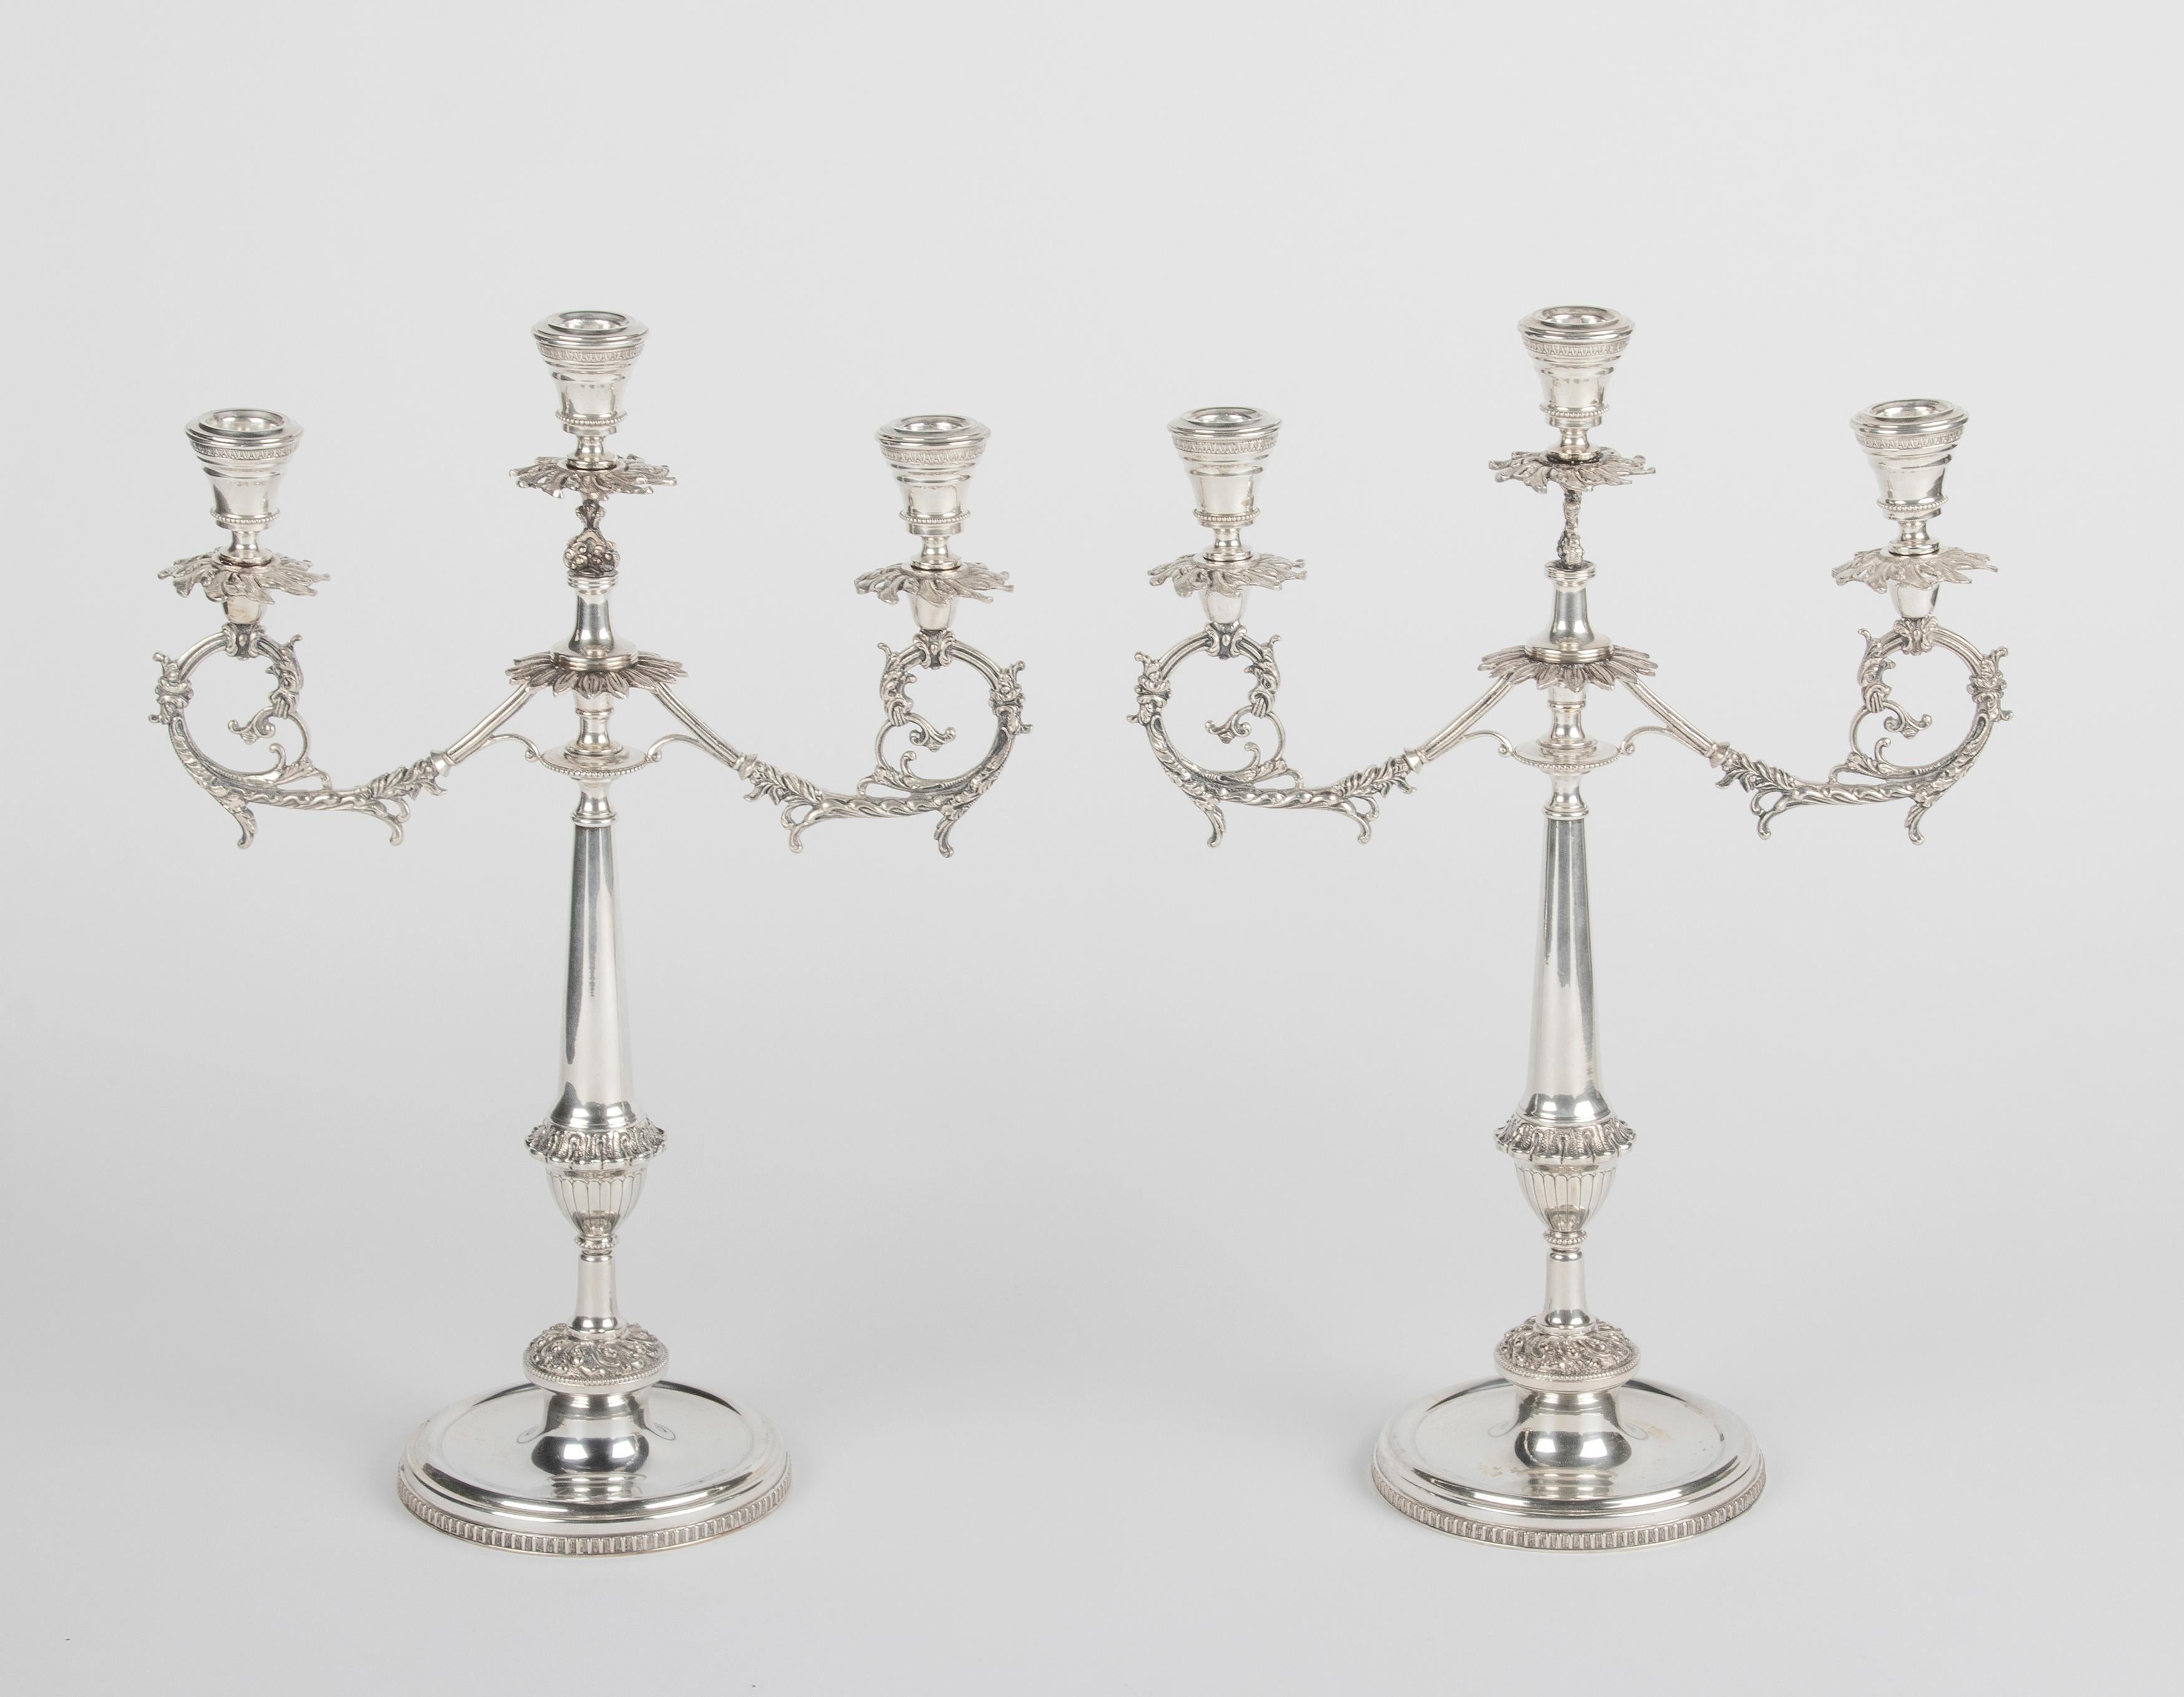 Ein Paar großer antiker Silberleuchter, schön verziert mit kunstvollen Ornamenten. Die Kerzenhalter sind mit einer 800er-Marke und einer unleserlichen Marke (vermutlich vom Hersteller) gestempelt. Sehr dekorative Objekte, jeder Kerzenständer bietet